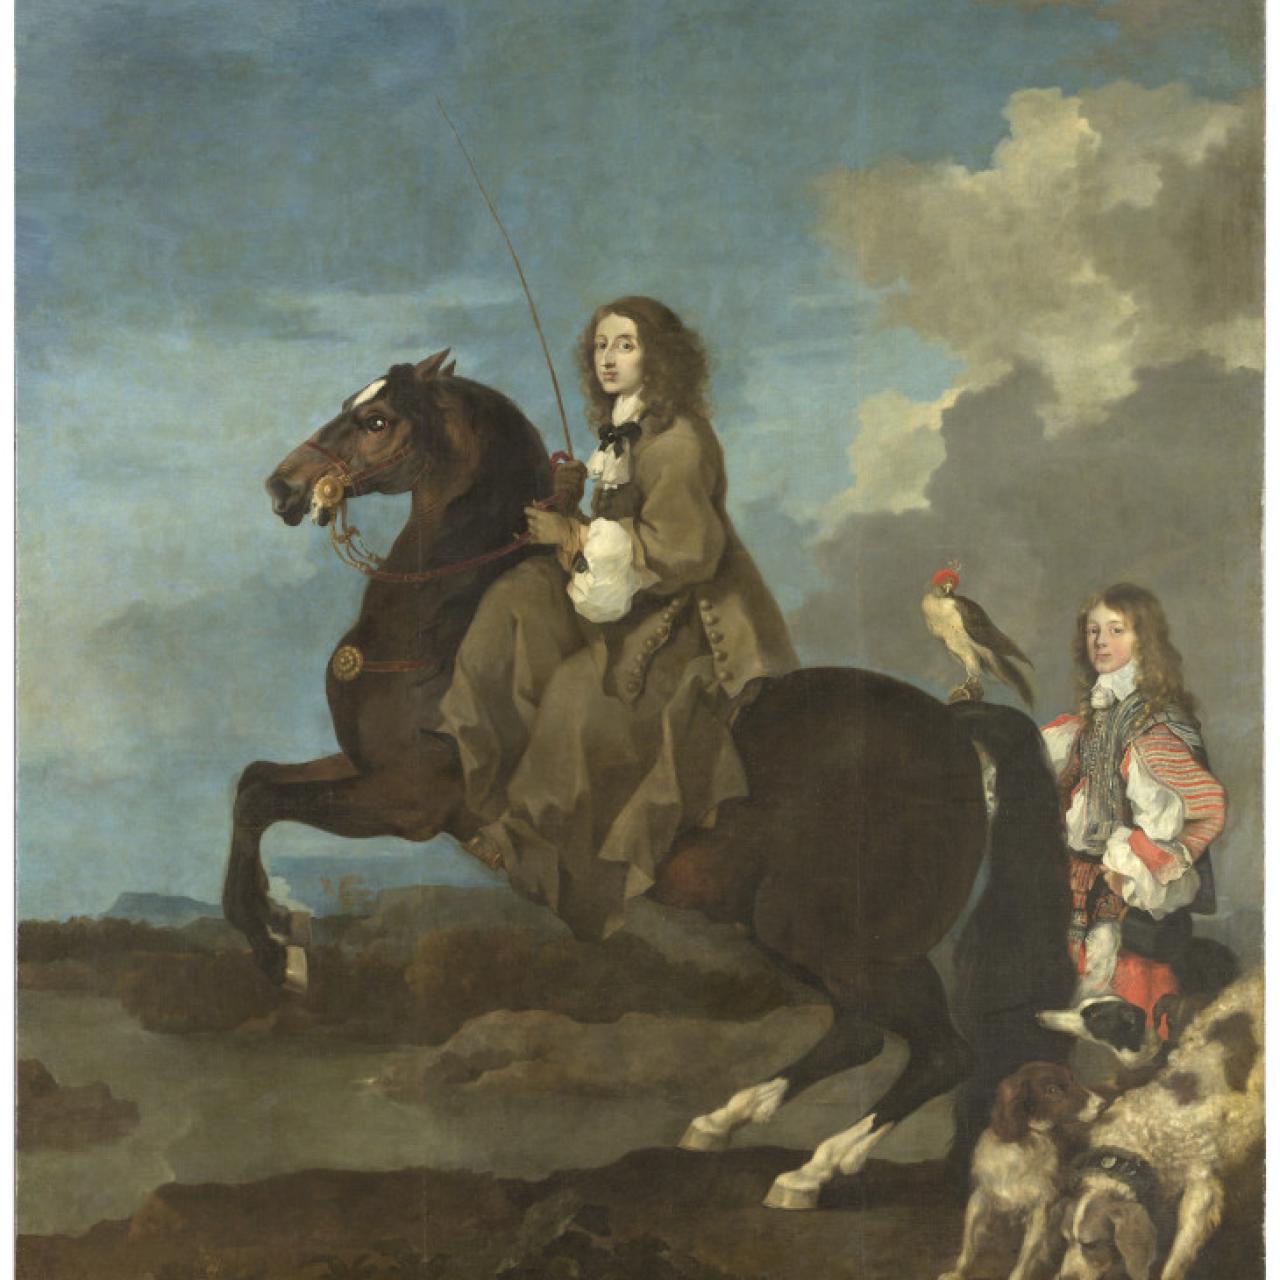 Tercera sección del itinerario: Cristina de Suecia, reina, a caballo (1653-54) de Sébastien de Bourdon. Foto: cedida por el Museo del Prado